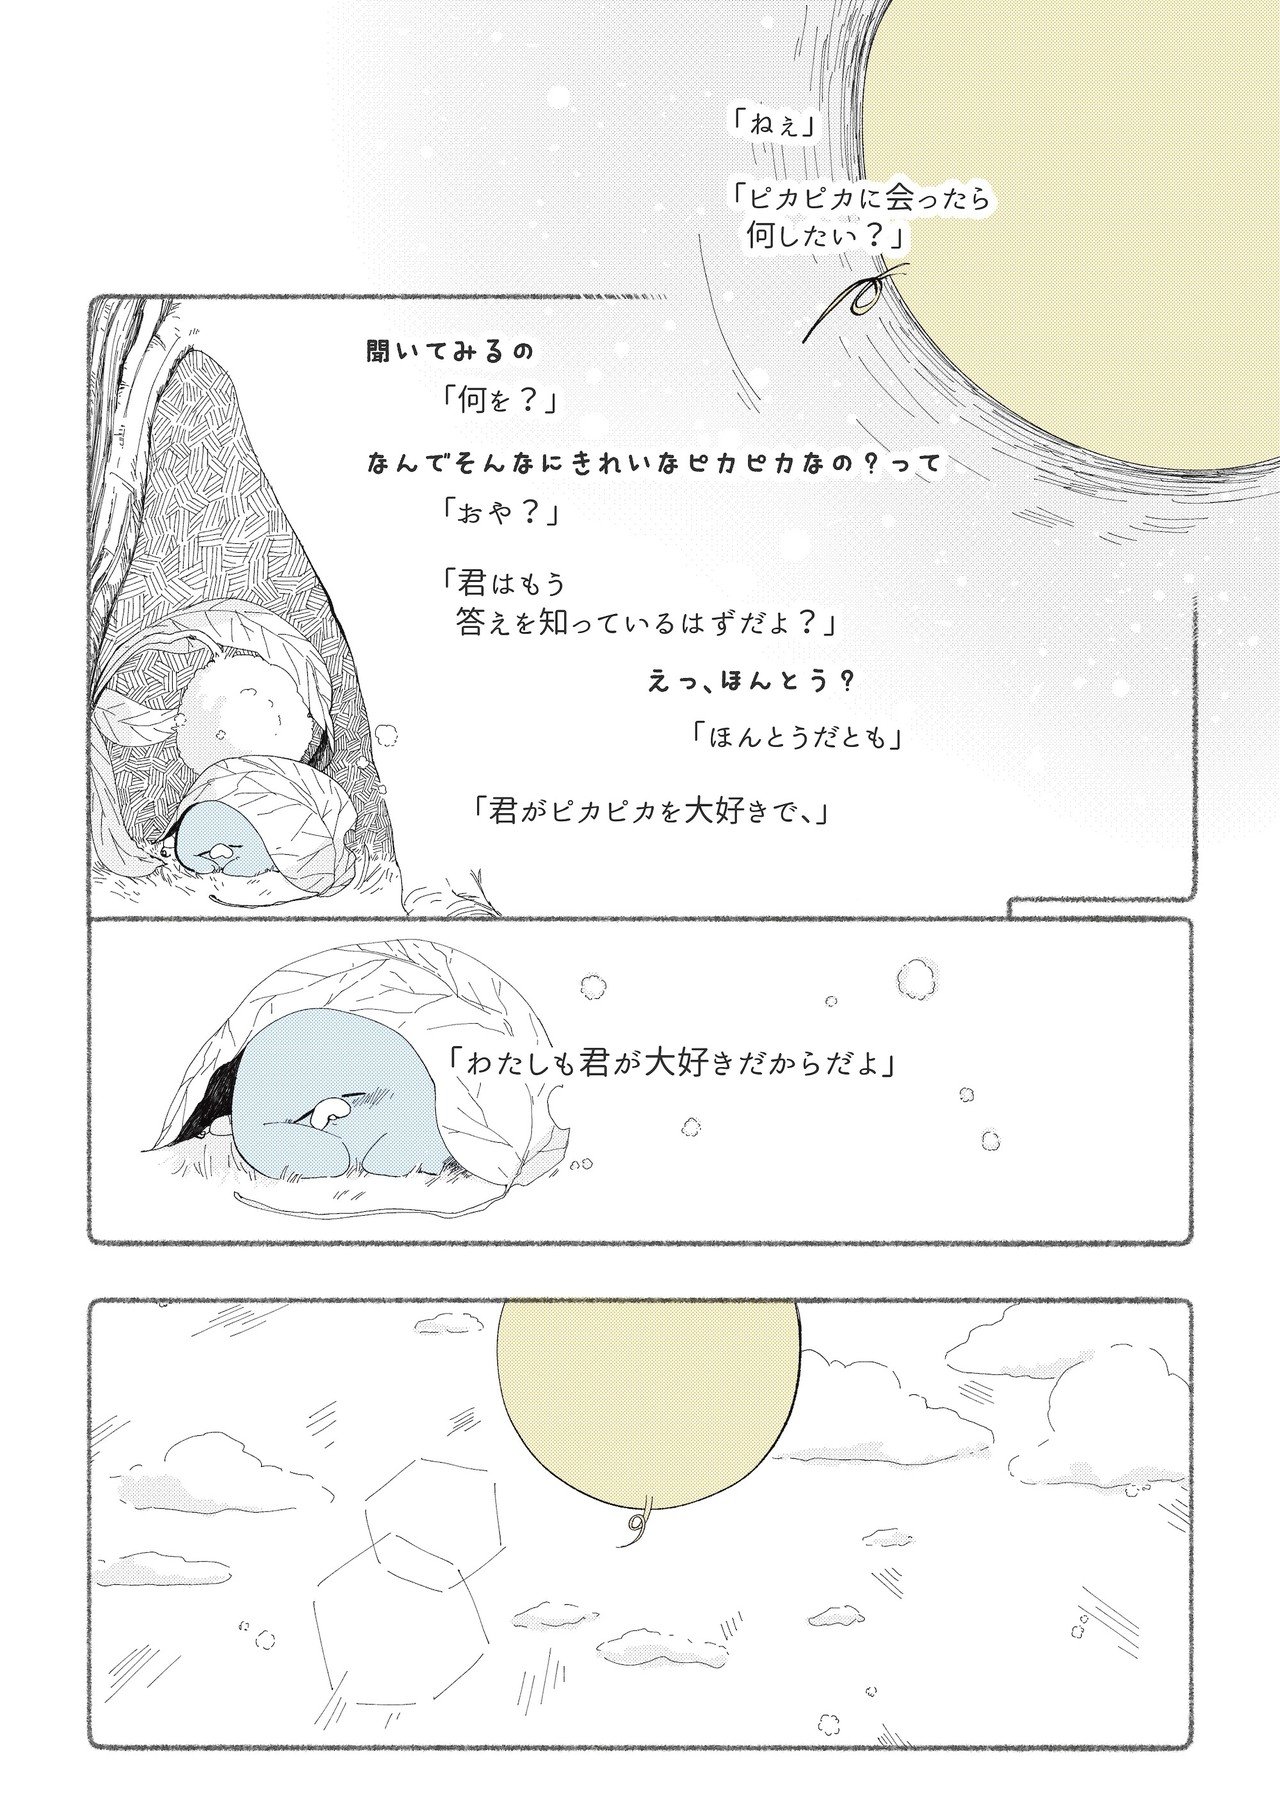 ロウソクくん_漫画6